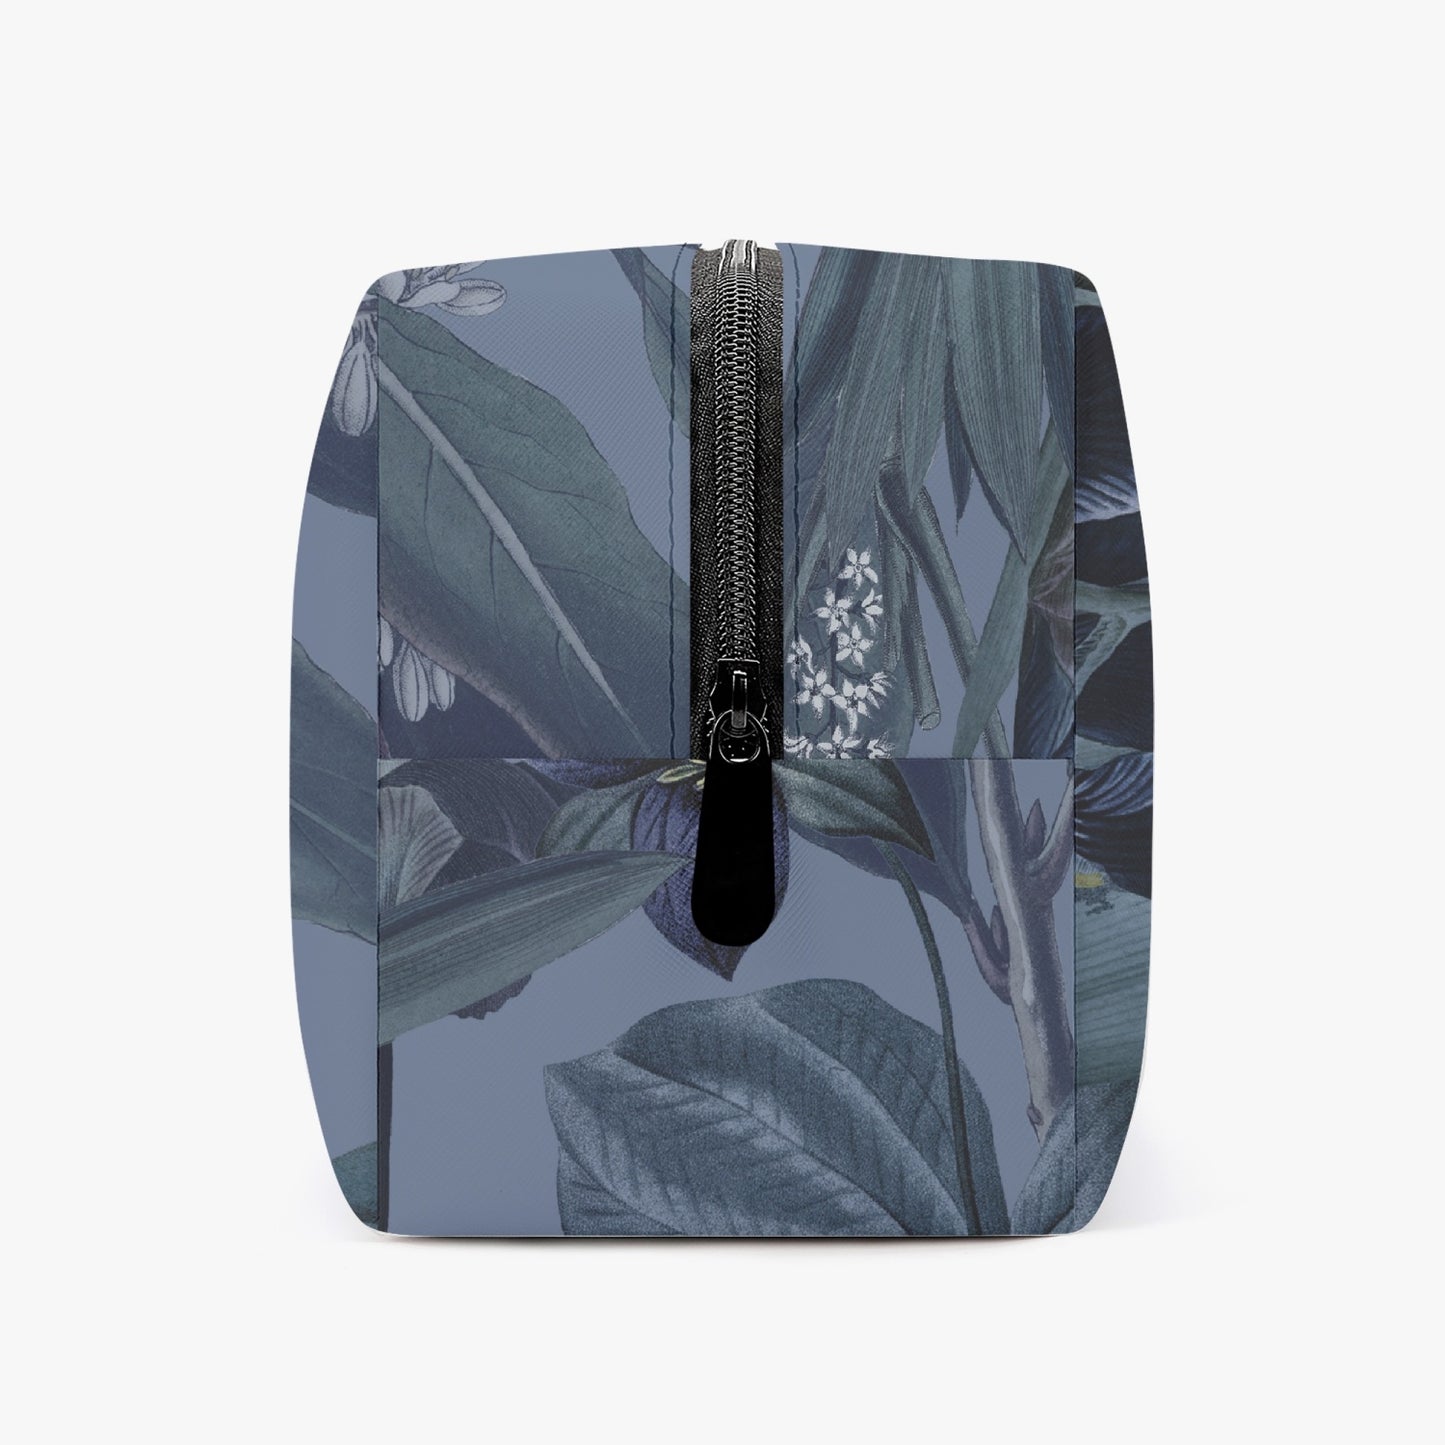 «Blue Botanicals» Makeup Bag